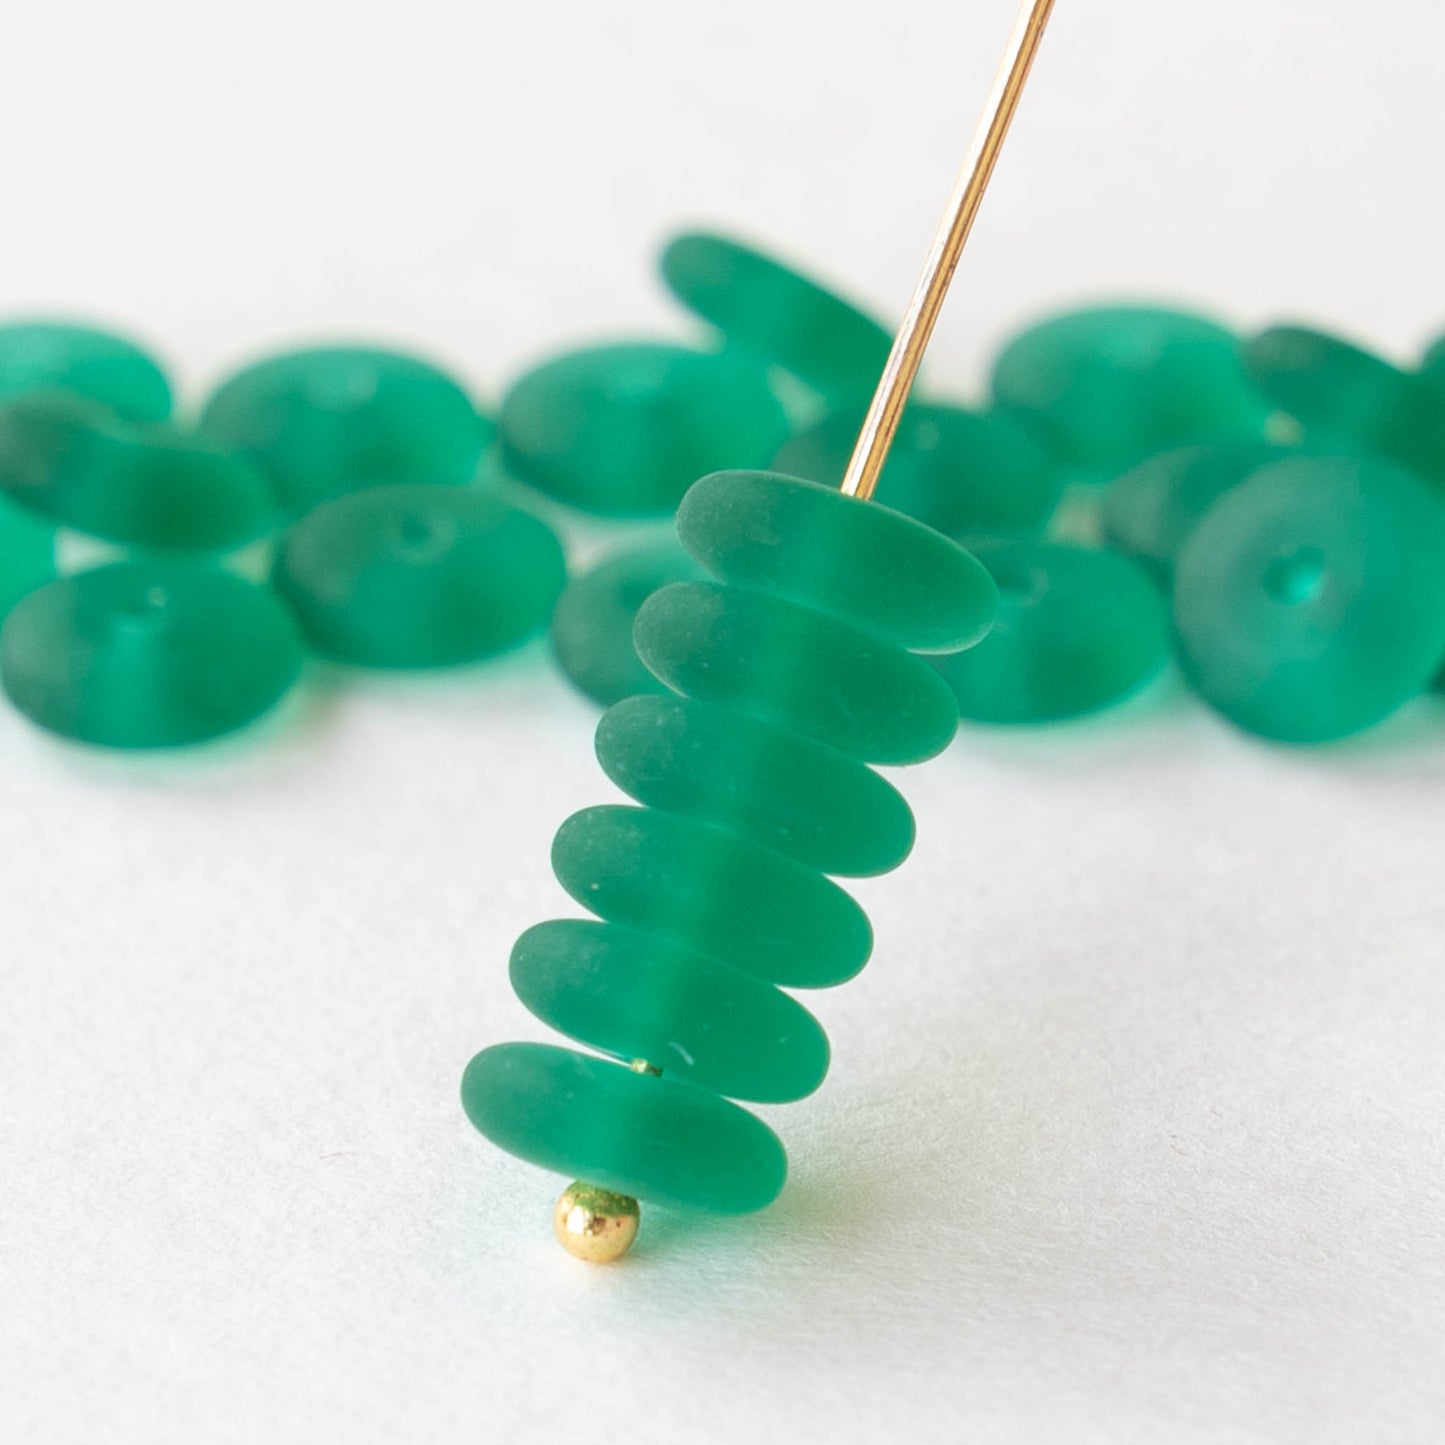 8mm Glass Rondelle Beads - Emerald Green Matte - 30 Beads